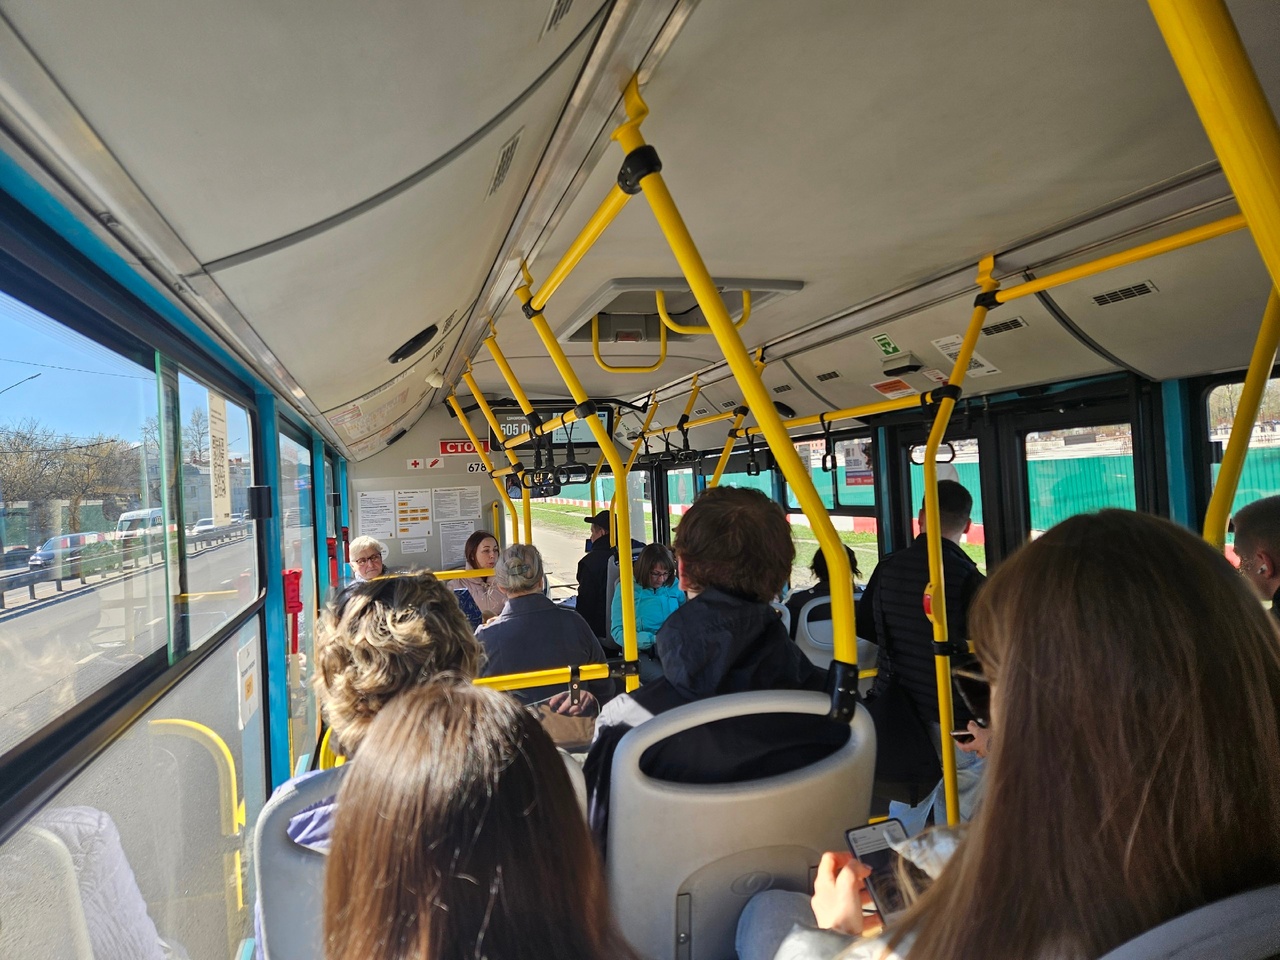 “На крики и просьбы ответил агрессивно”: В Ярославле водитель автобуса 39 придавил пассажирку дверям